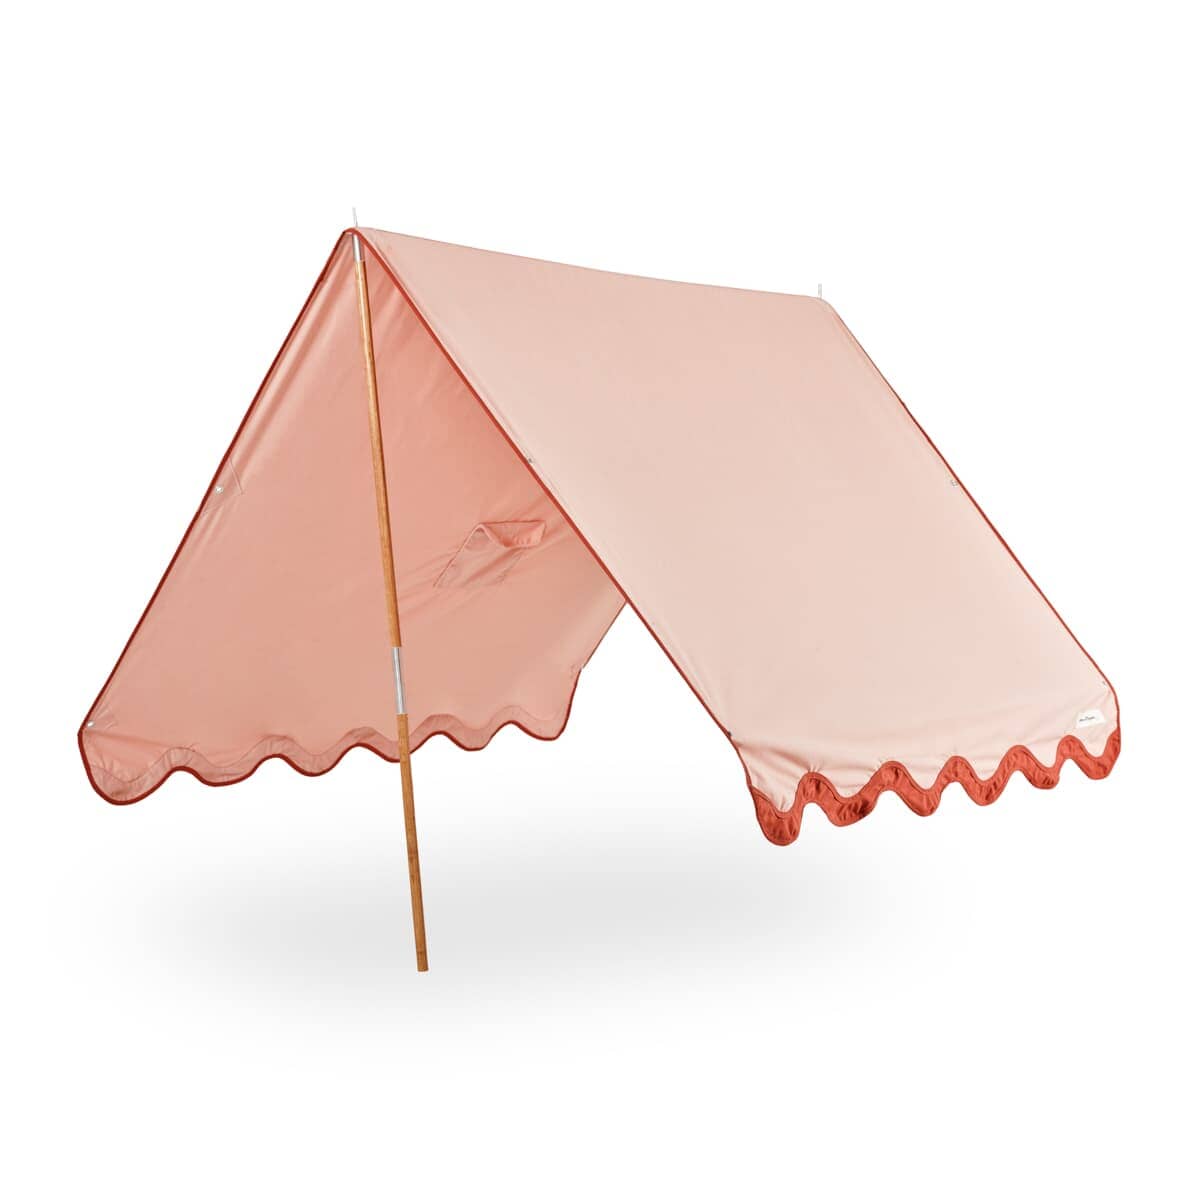 The Premium Beach Tent - Rivie Pink Premium Tent Business & Pleasure Co Aus 